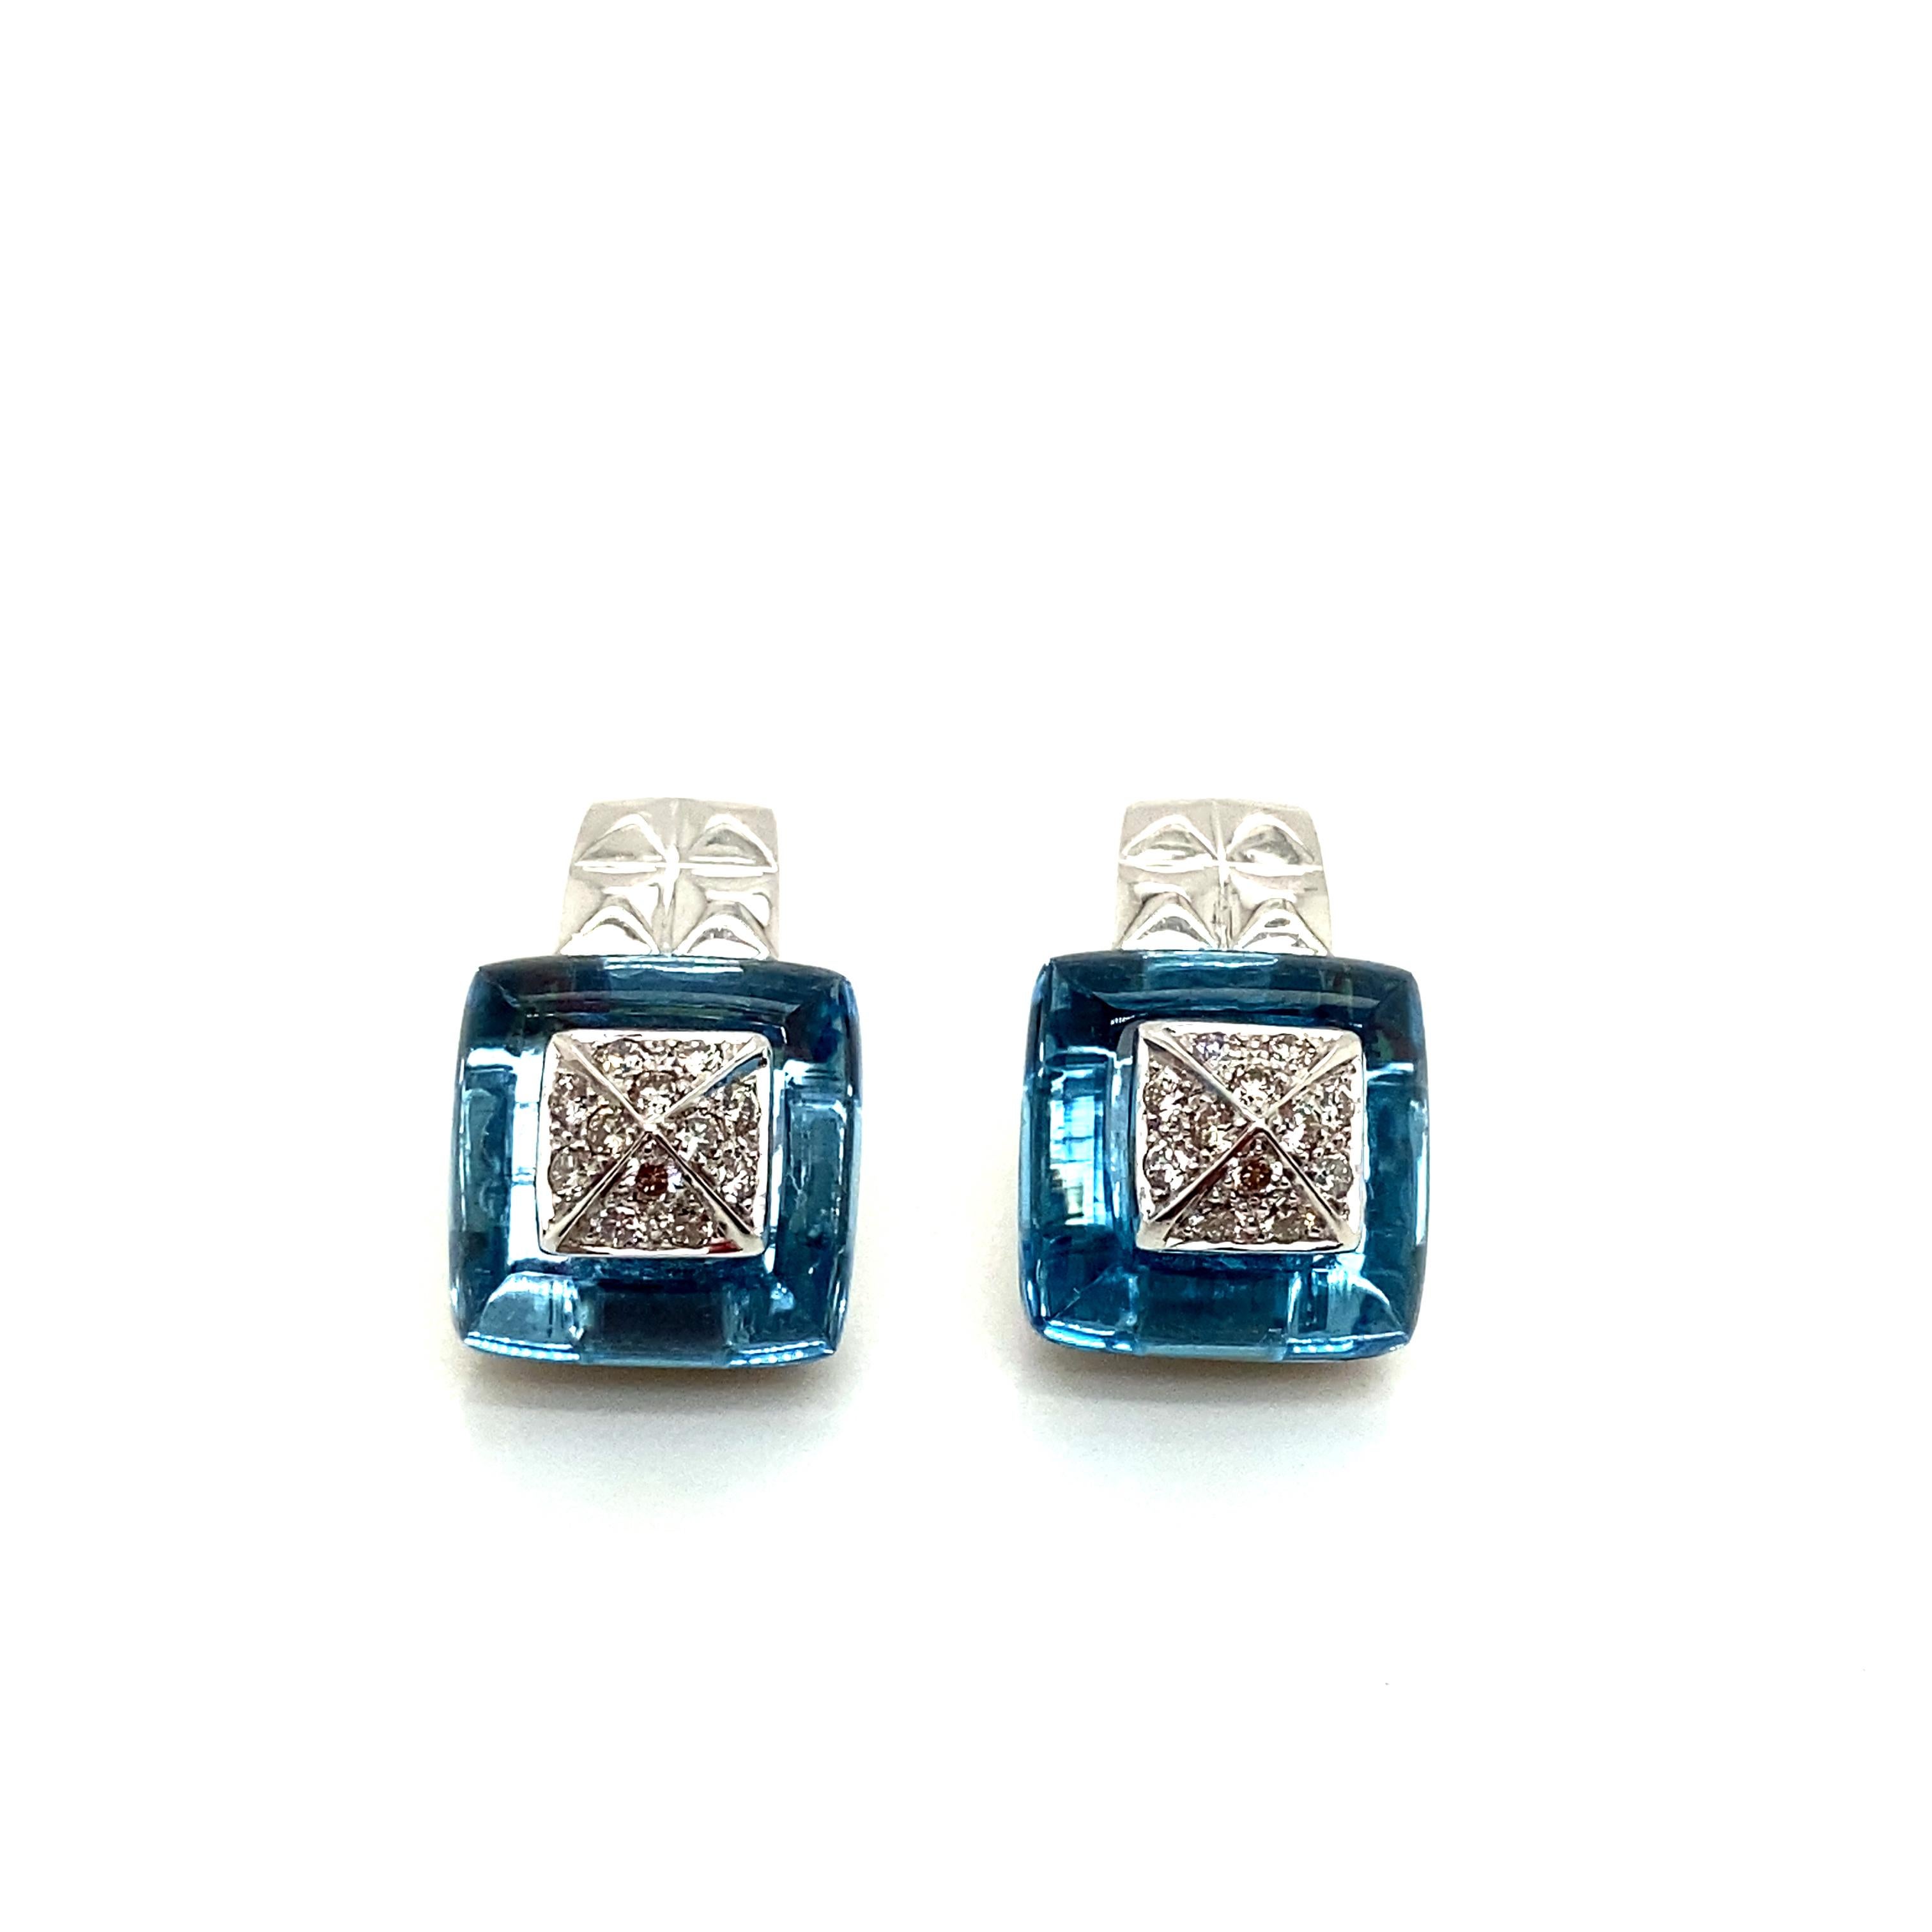 16.95 Karat Blautopas und Weißdiamant-Ohrringe aus Gold:

Dieses wunderschöne Paar Ohrringe besteht aus zwei blauen Topasen im Fancy-Schliff in Form eines Zuckerhuts mit einem Gewicht von 16,95 Karat und einer Gruppe weißer runder Diamanten im